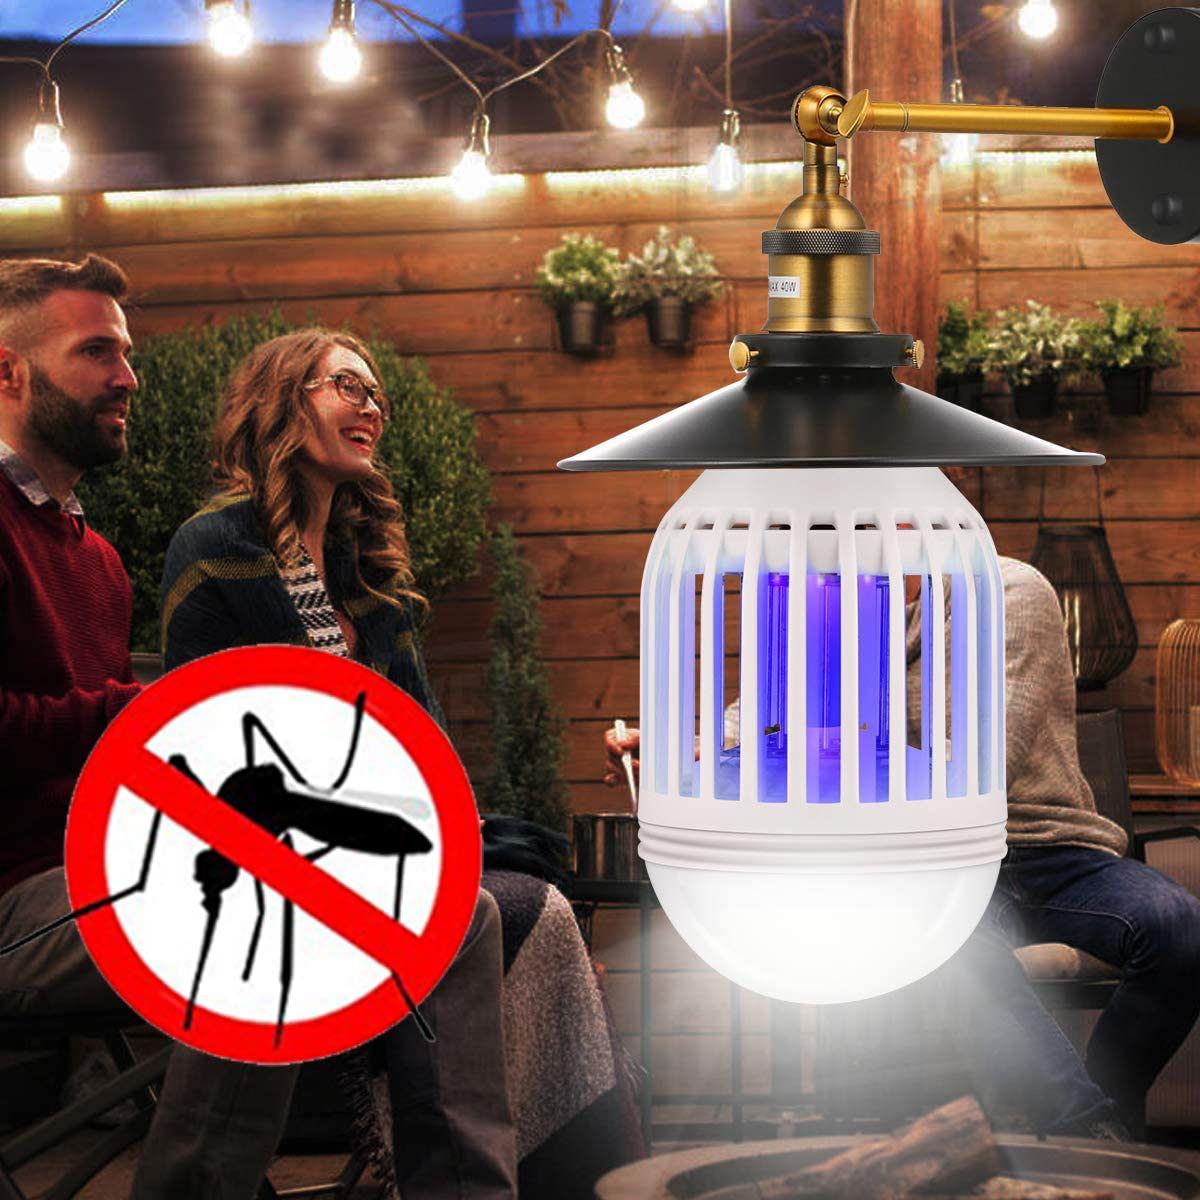 Bug Zapper Light Bulb 2 in 1, Mosquito Killer Lamp Led UV Lamp Flying Moths Killer Fits 110V E26 Light Bulb Socket